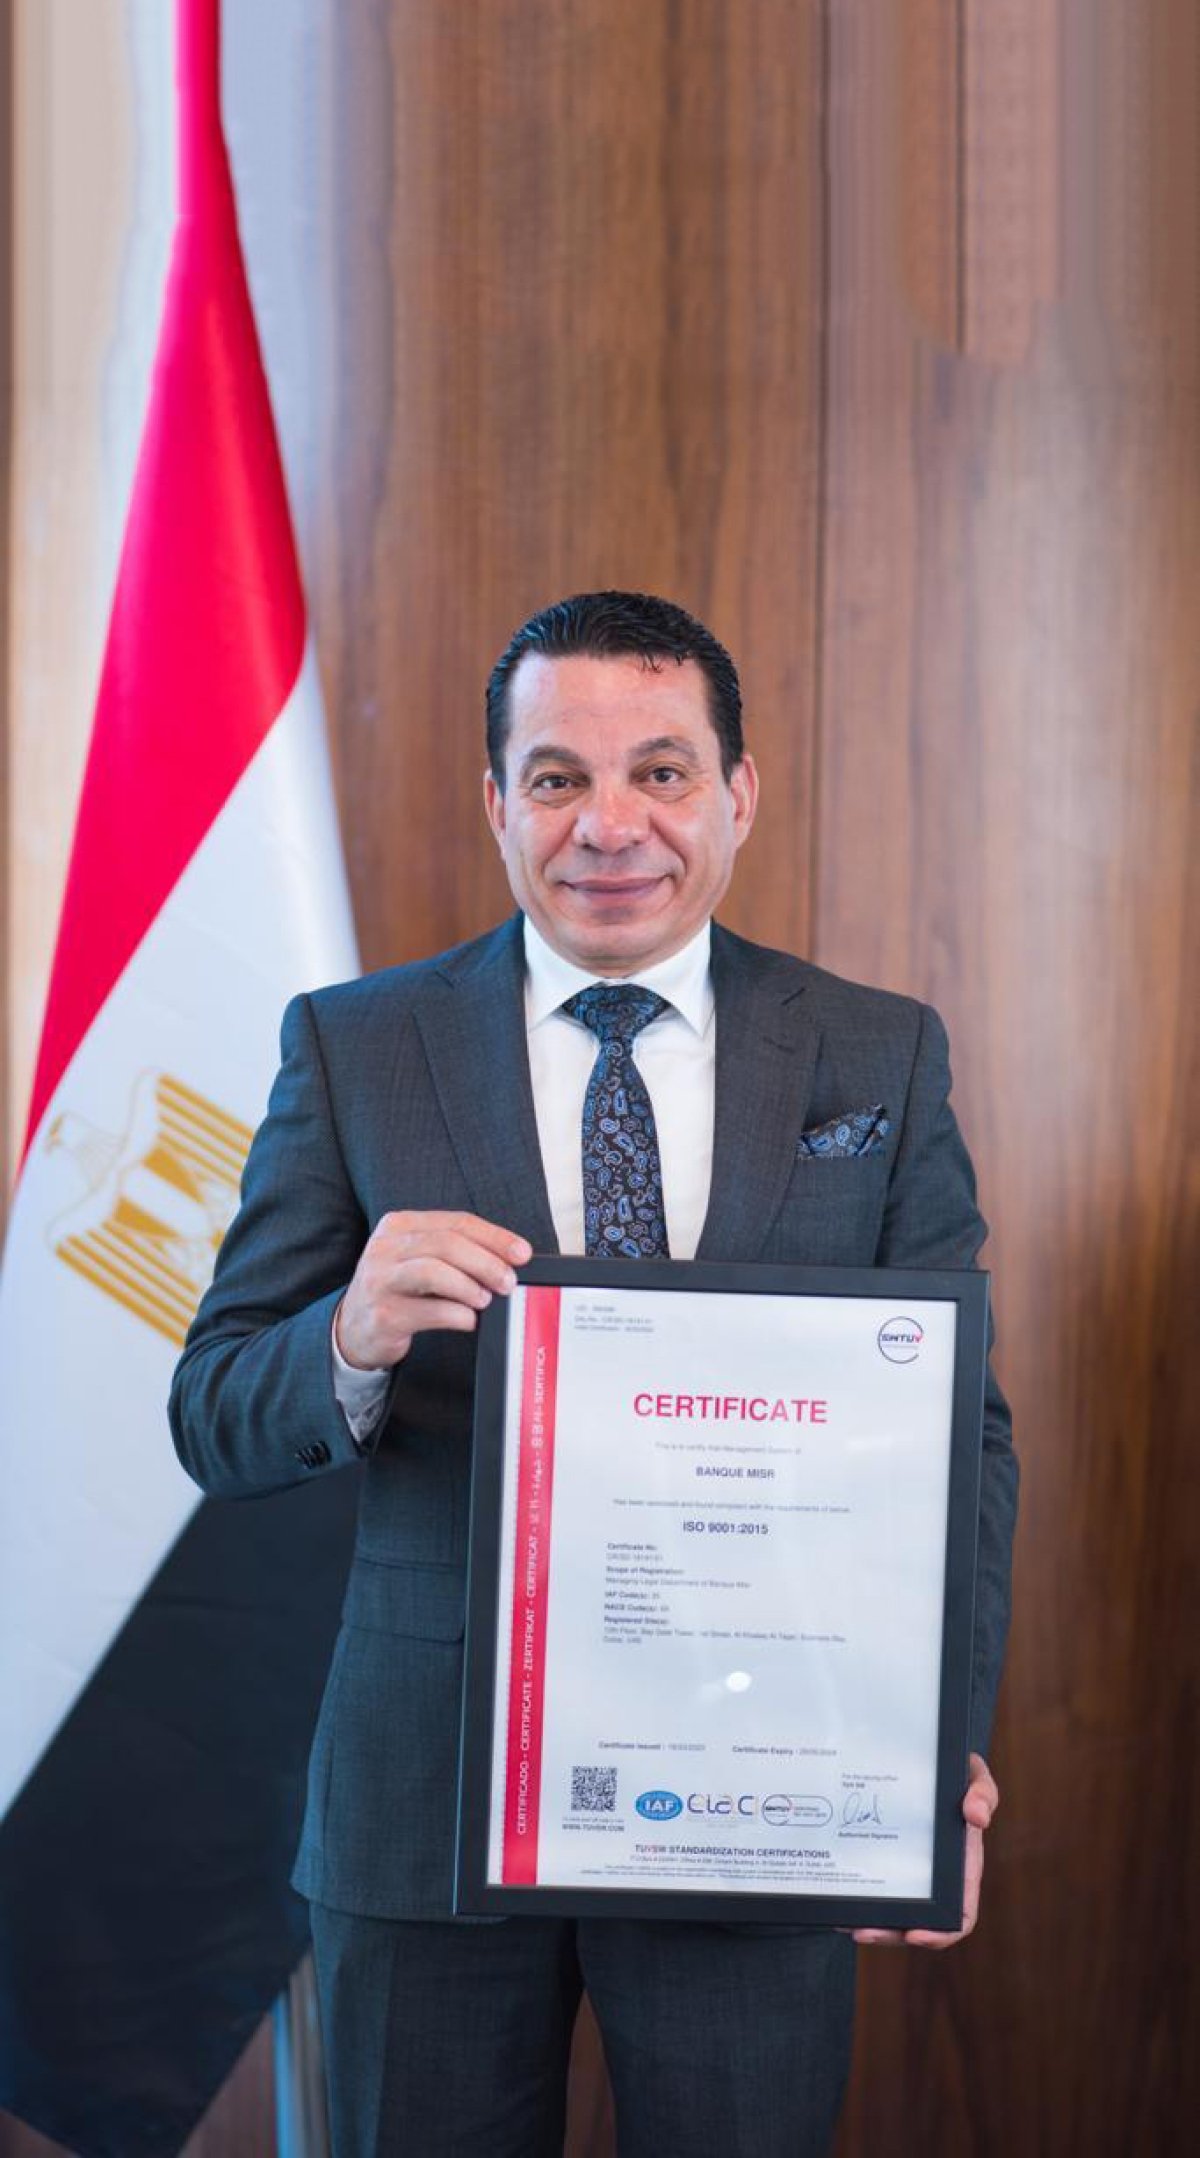 بنك مصر يحصل على شهادة الايزو "ISO 9001:2015" في مجال إدارة الجودة القانونية من قبل TUV southwest  